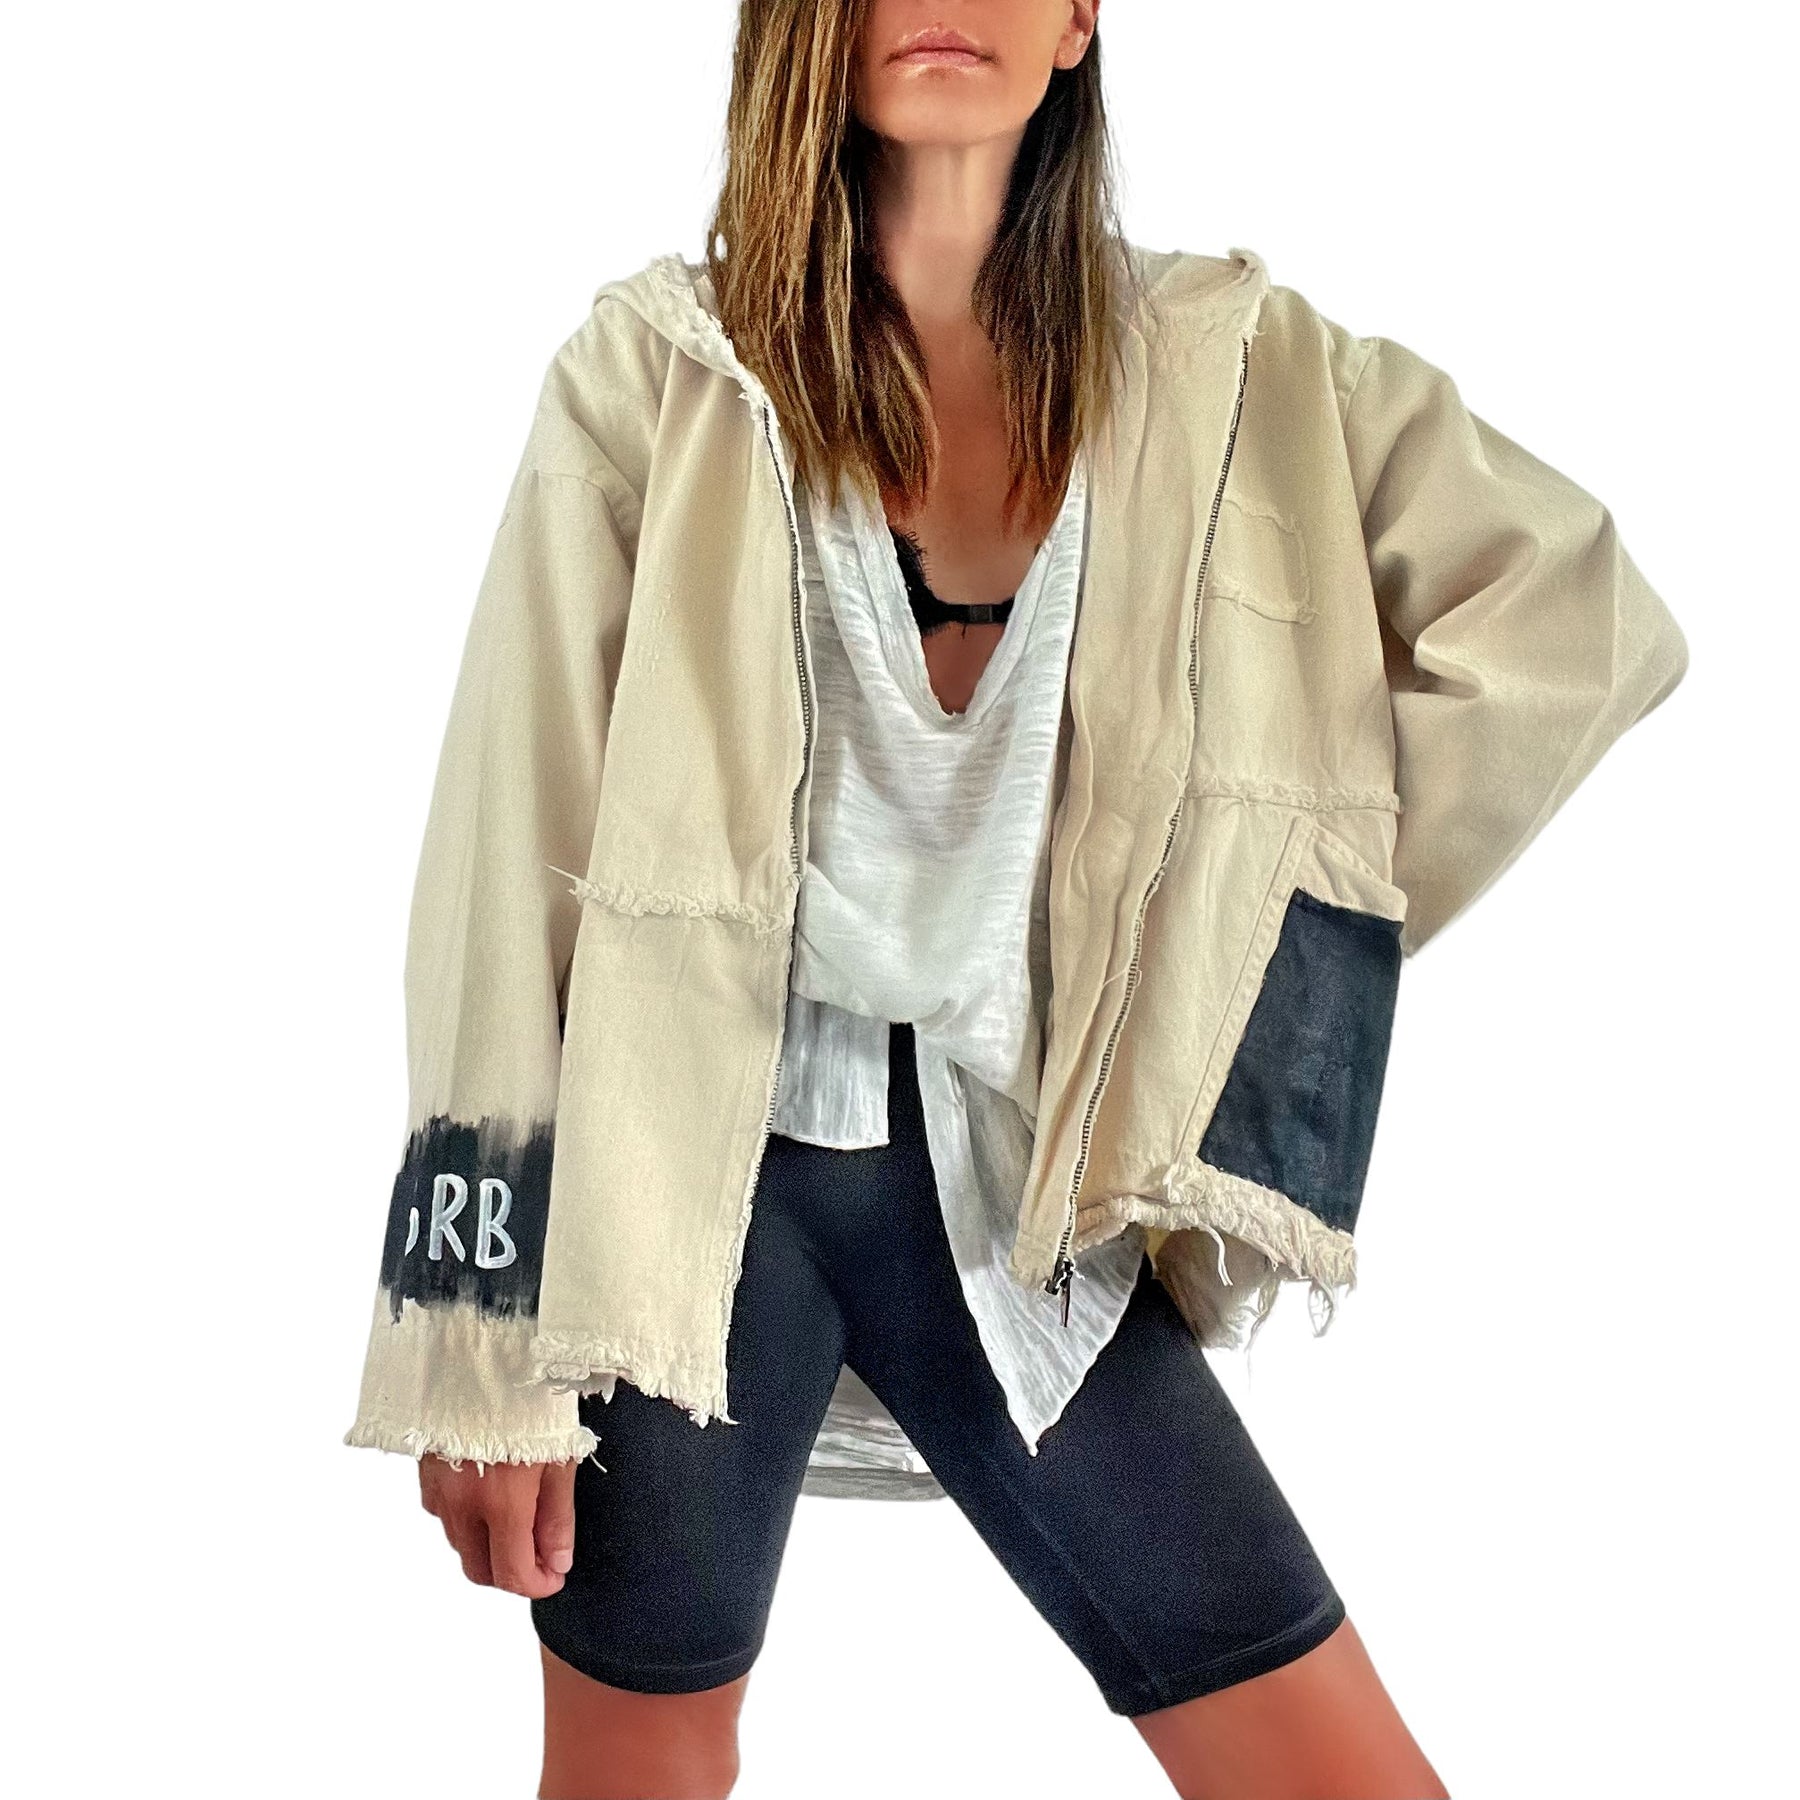 'Basic But Personalized' Ivory Denim Jacket